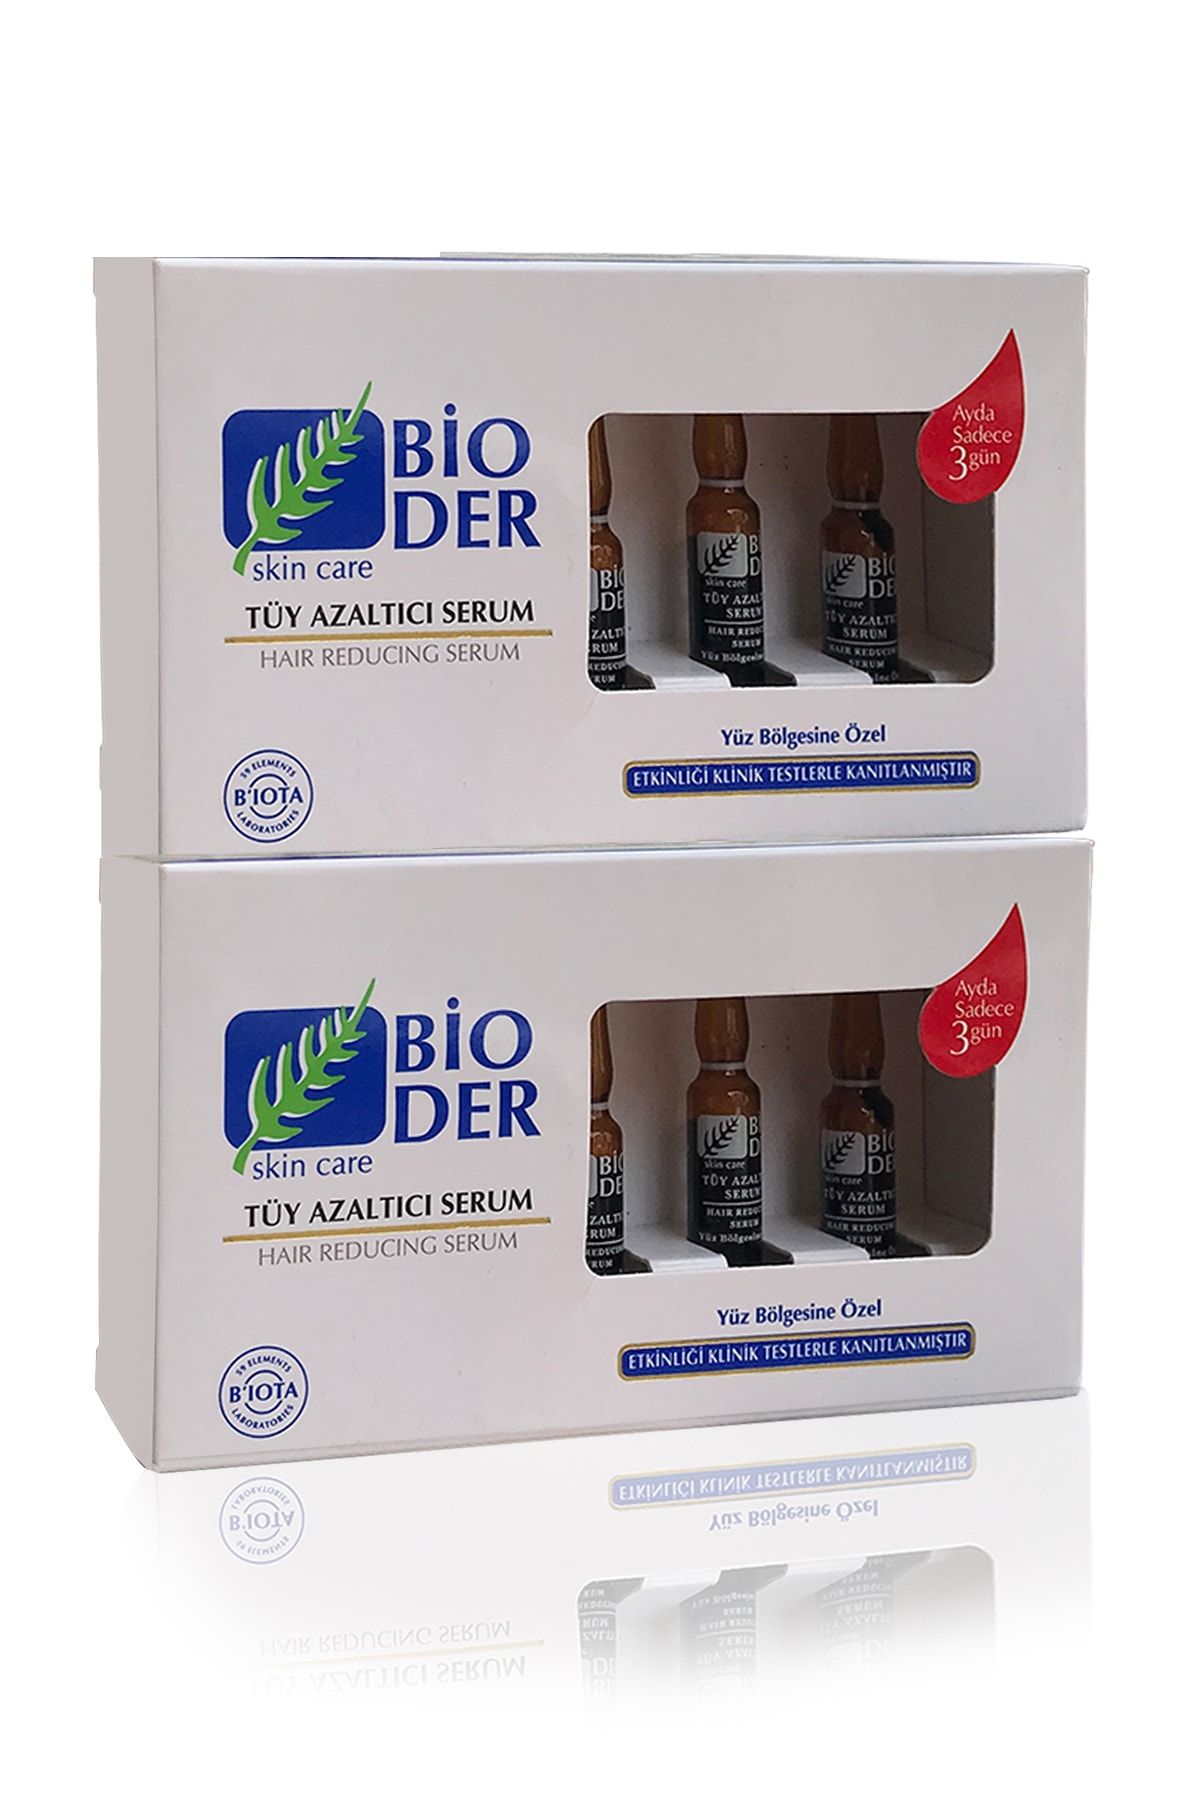 Bioder Tüy Azaltıcı Serum Yüz Bölgesi Için 2'li Avantaj Paketi (6*2ml)